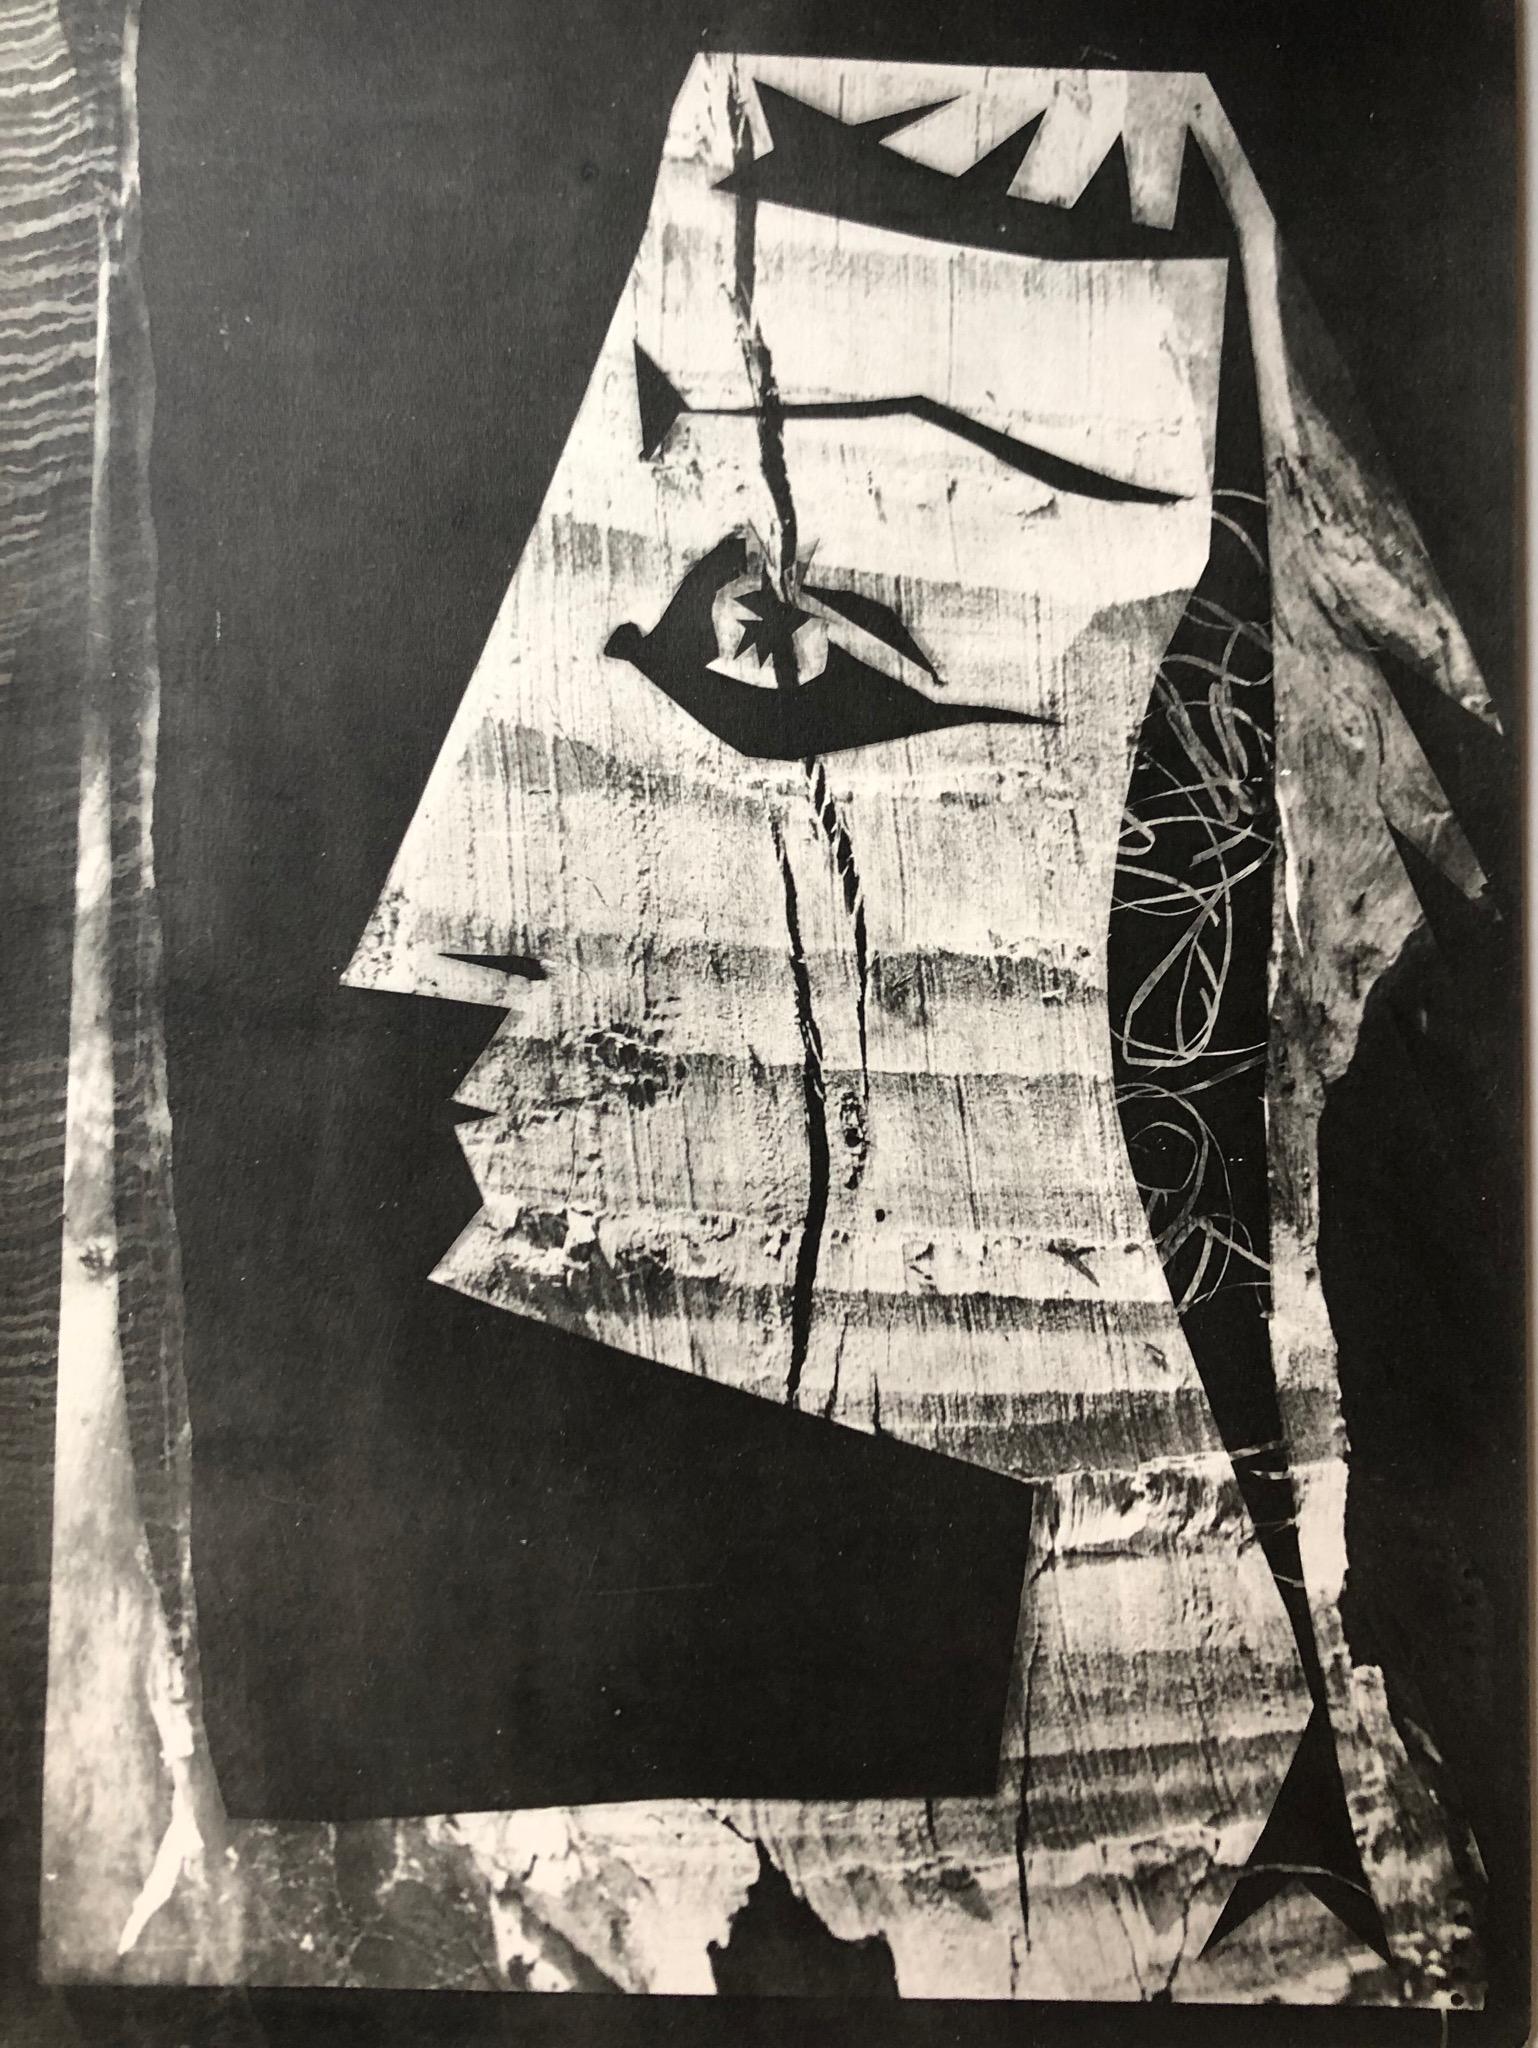 Pablo Picasso Abstract Print – Jacqueline bei den Schafen